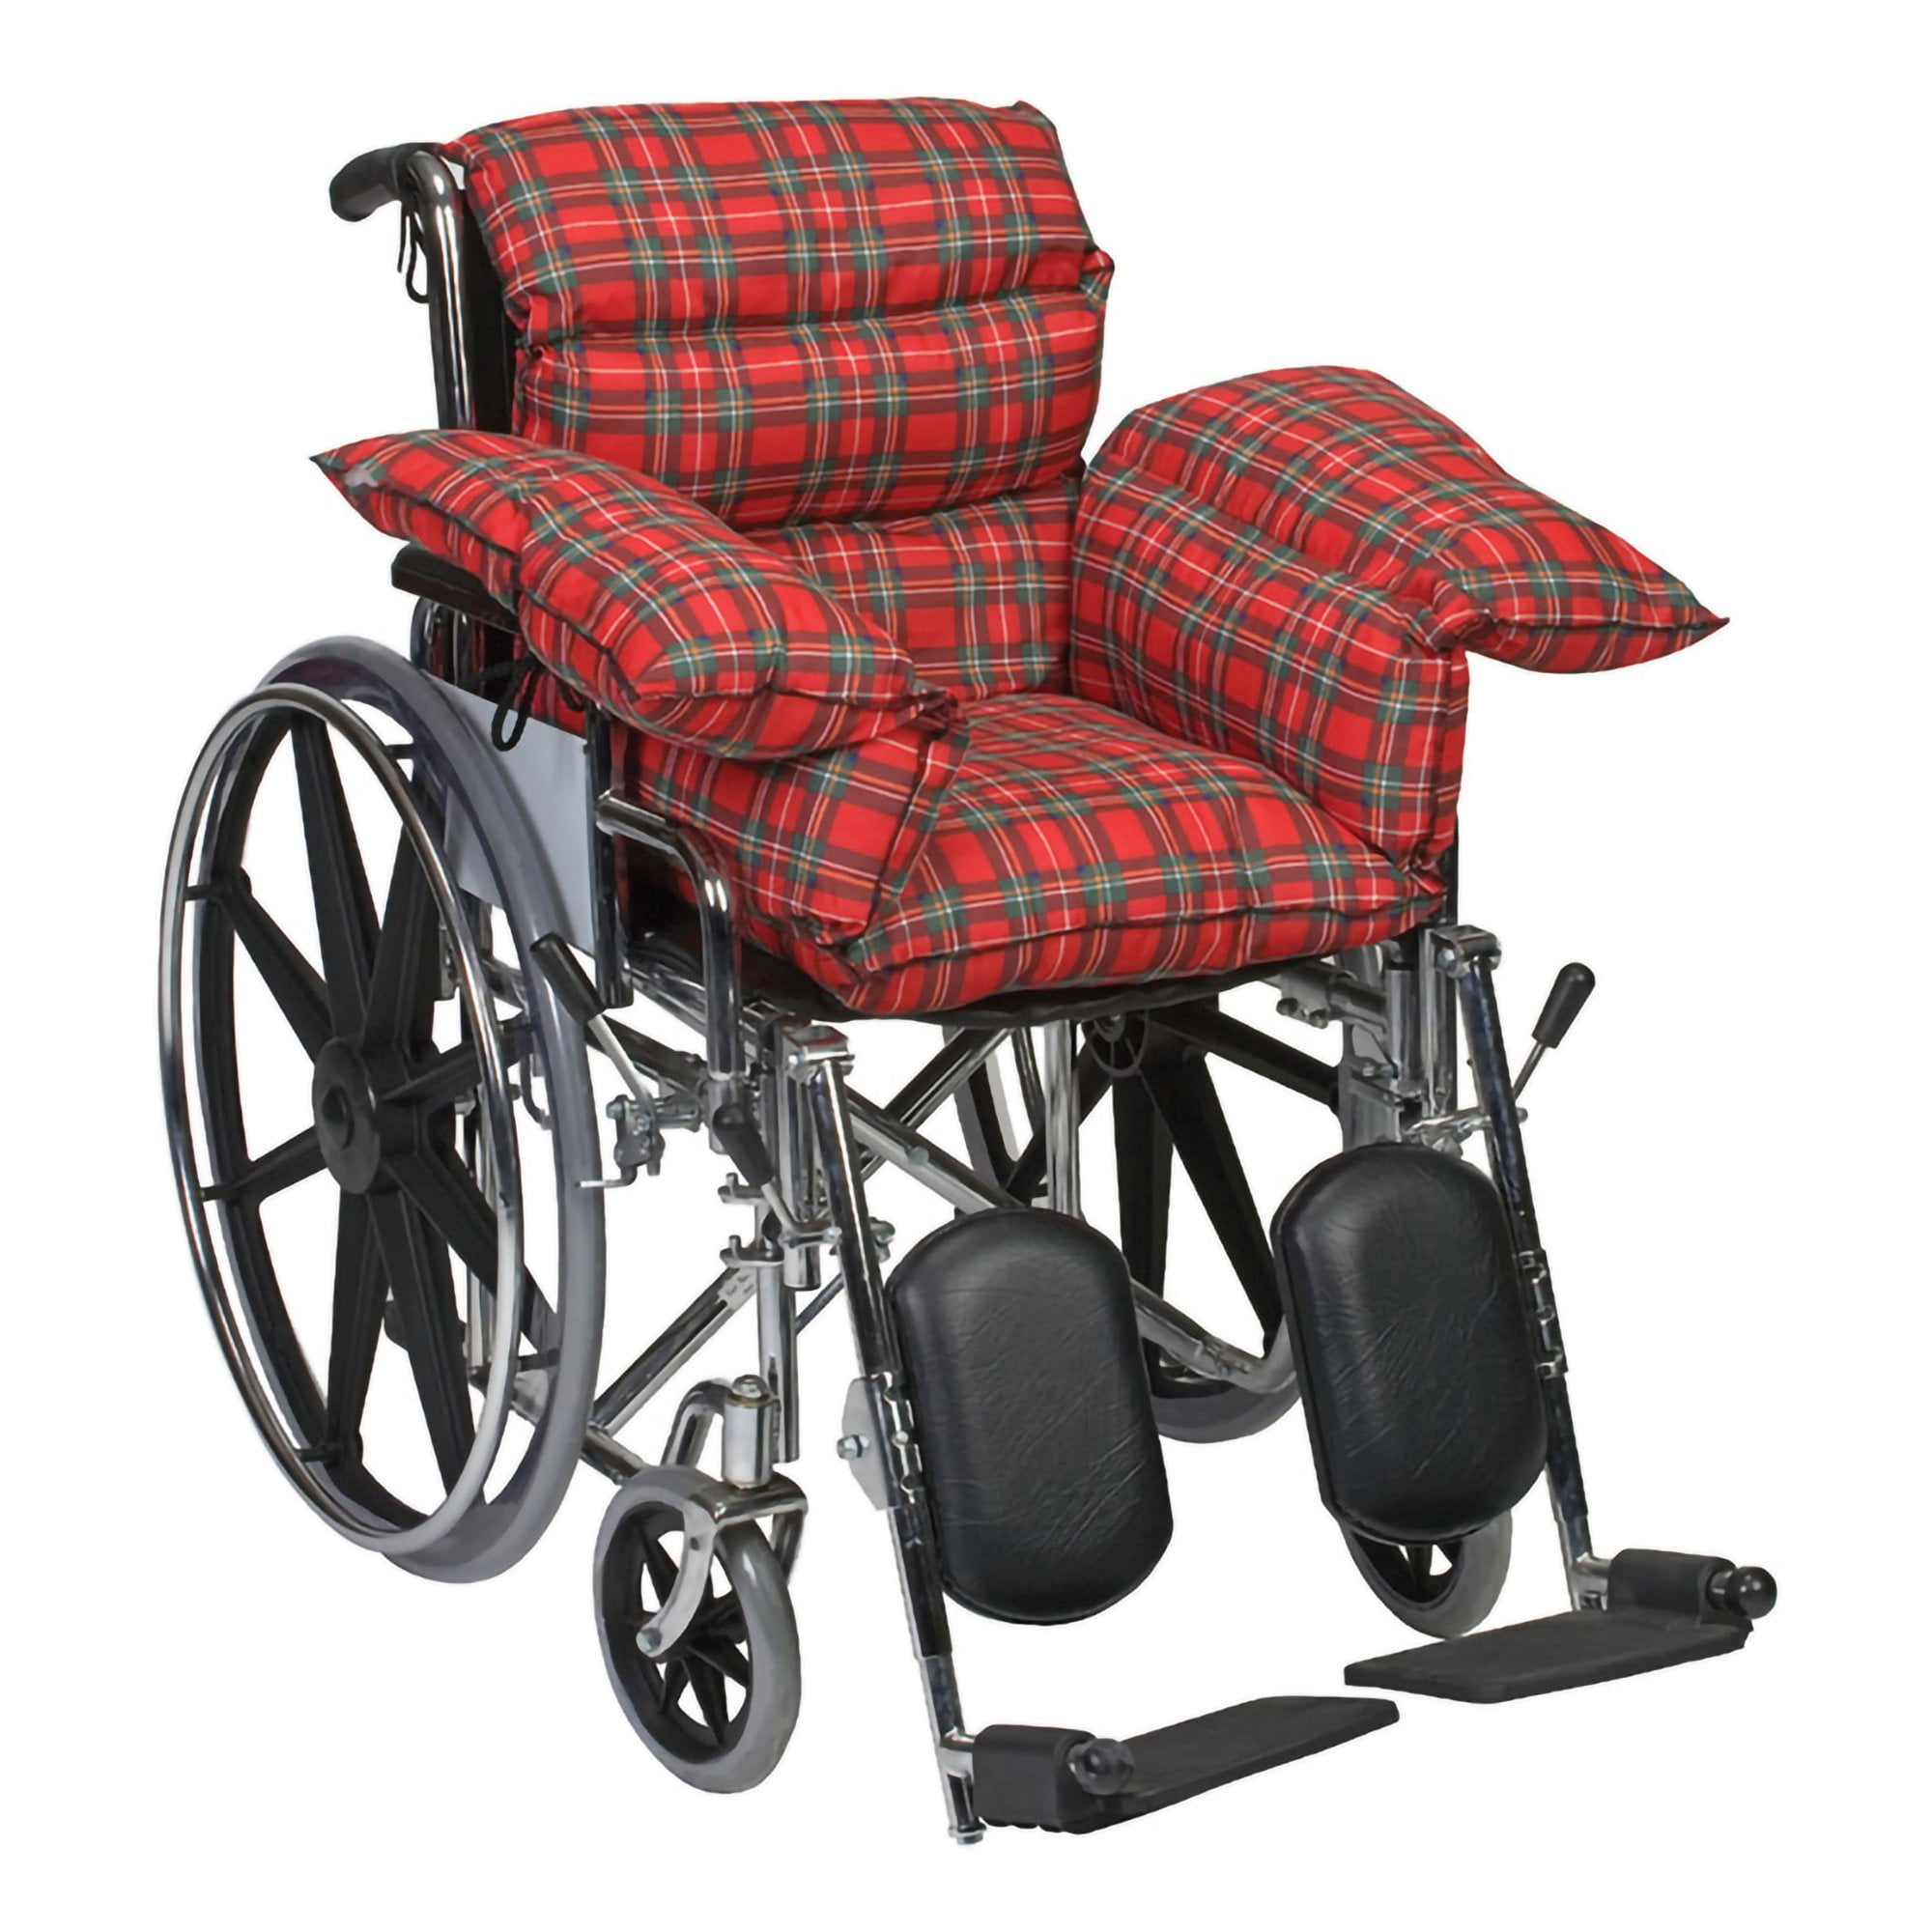 DMI Polyfoam Wheelchair Cushion, Standard, Navy, 16 x 18 x 2